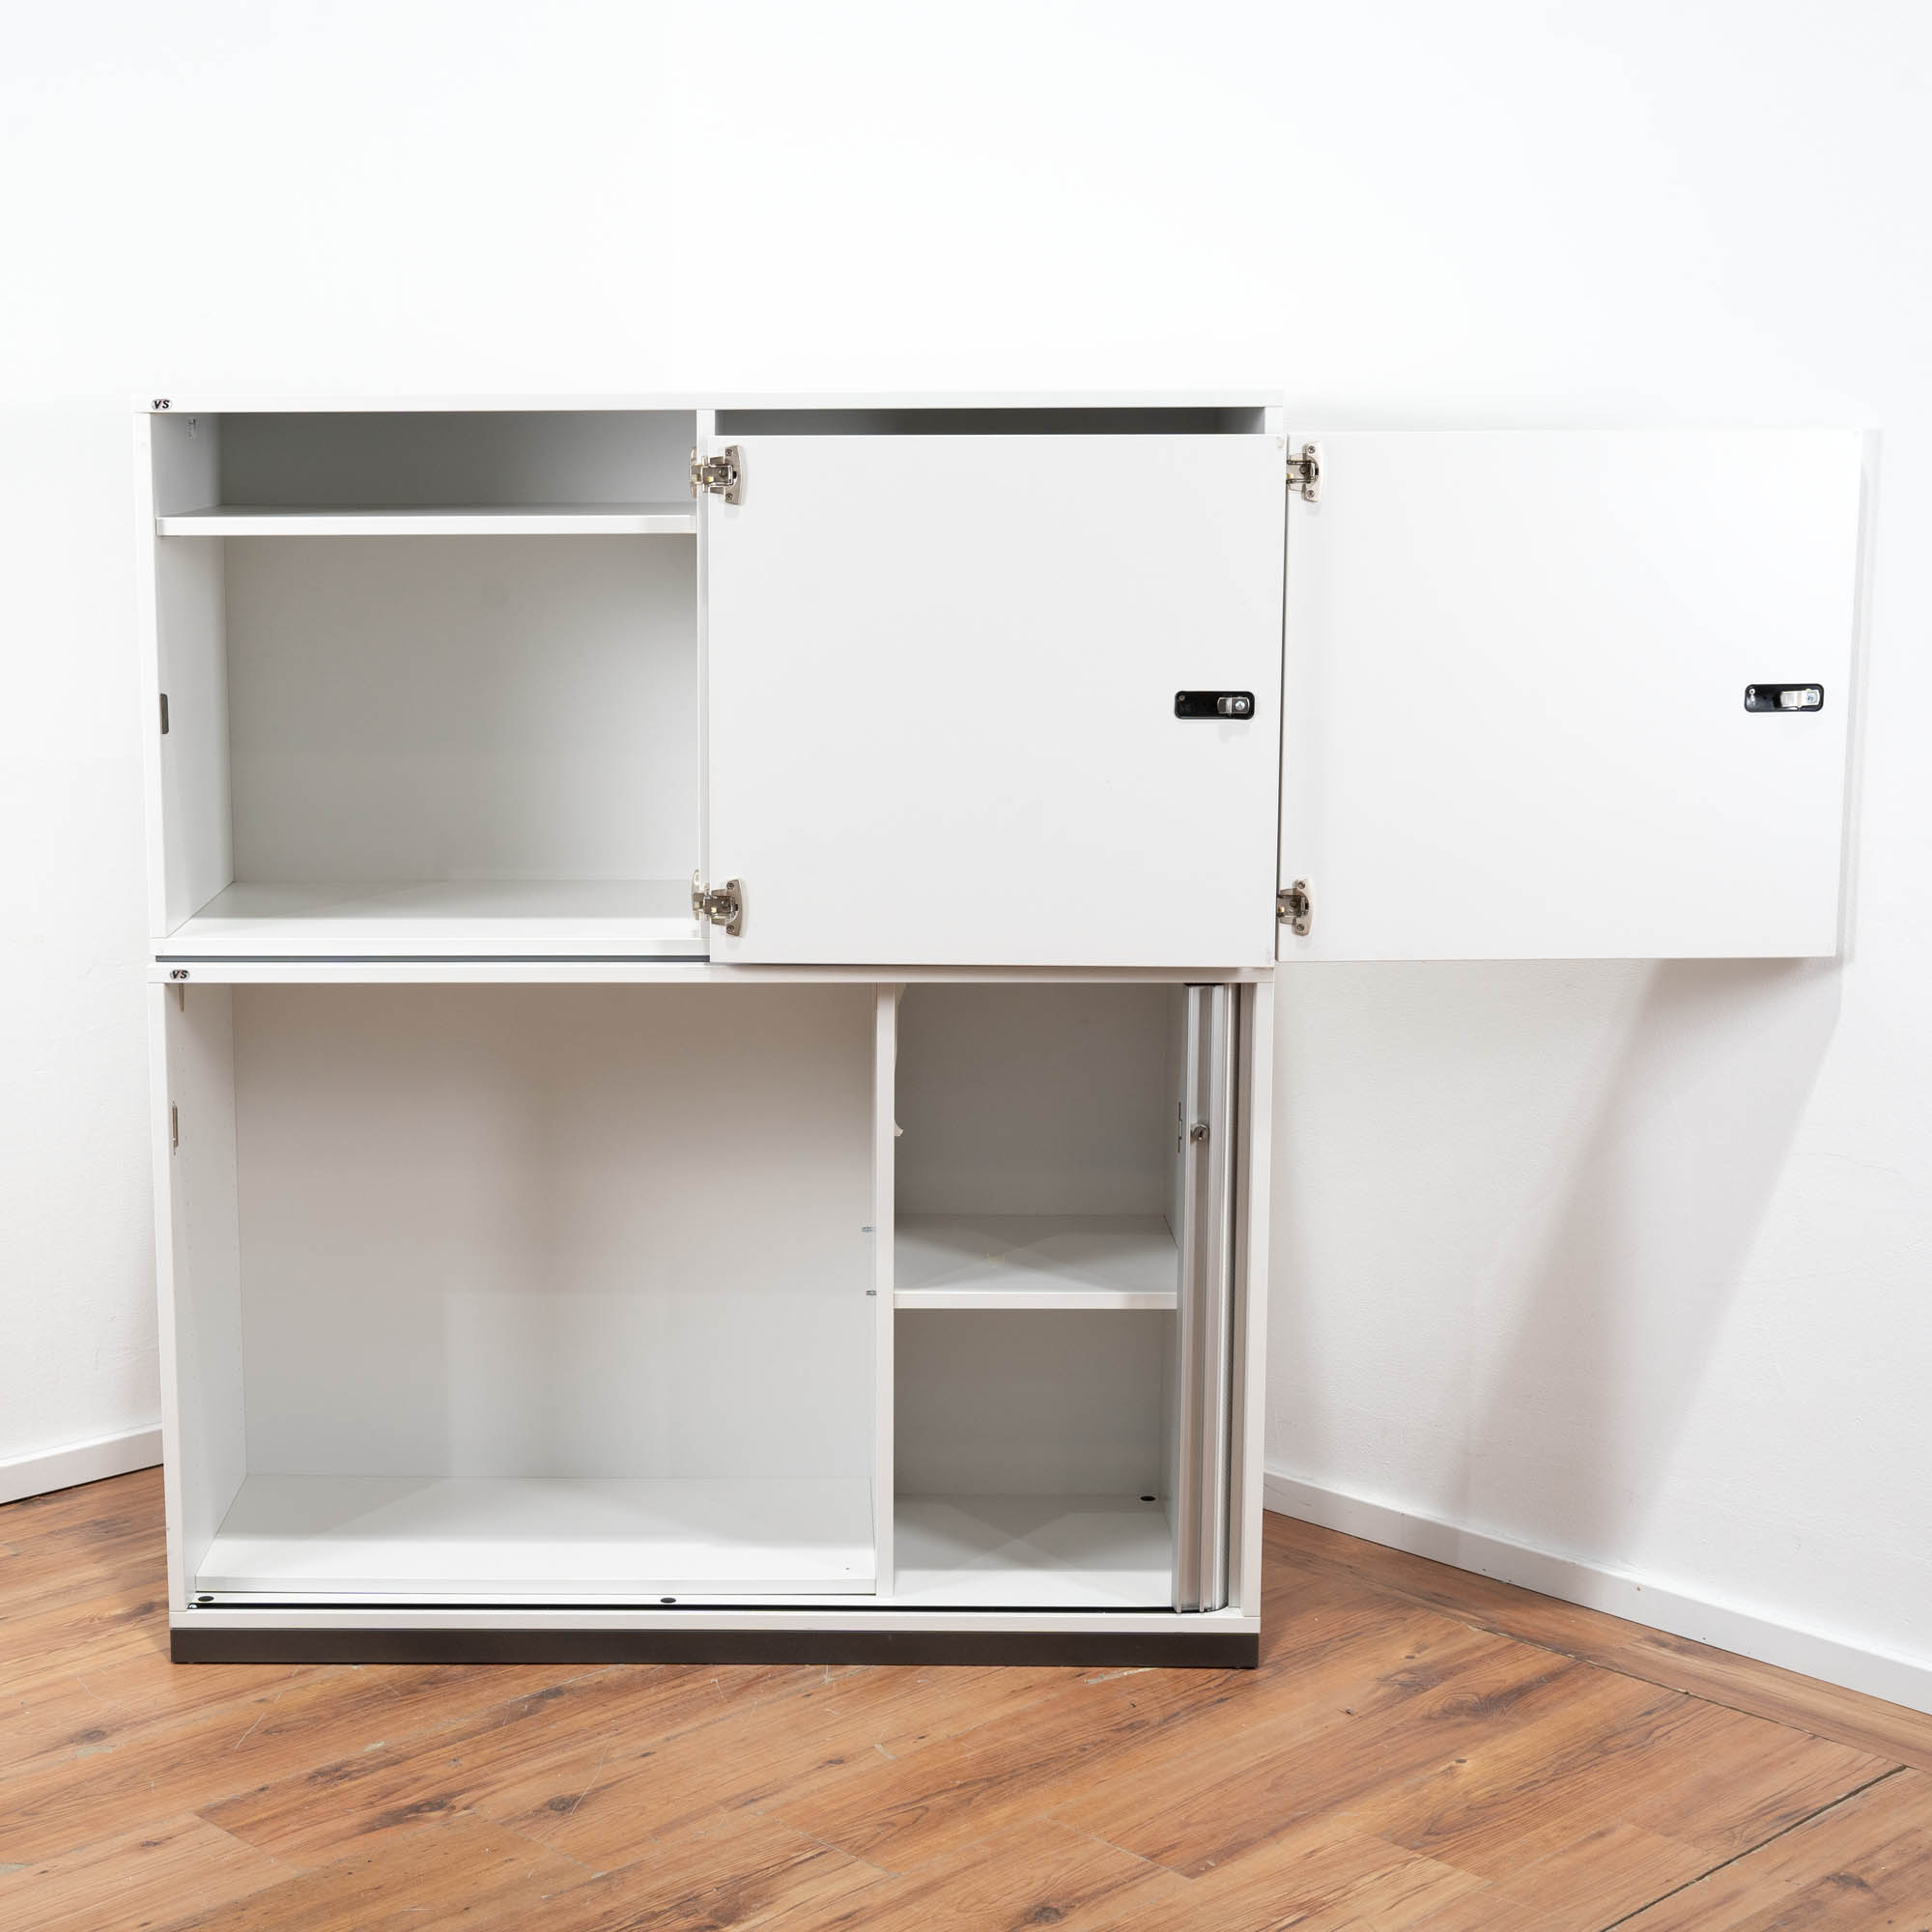 VS Möbel Schließfachschrank weiß 140 x 120 x 48 cm - 2 Türen - 1 Querrollladen 